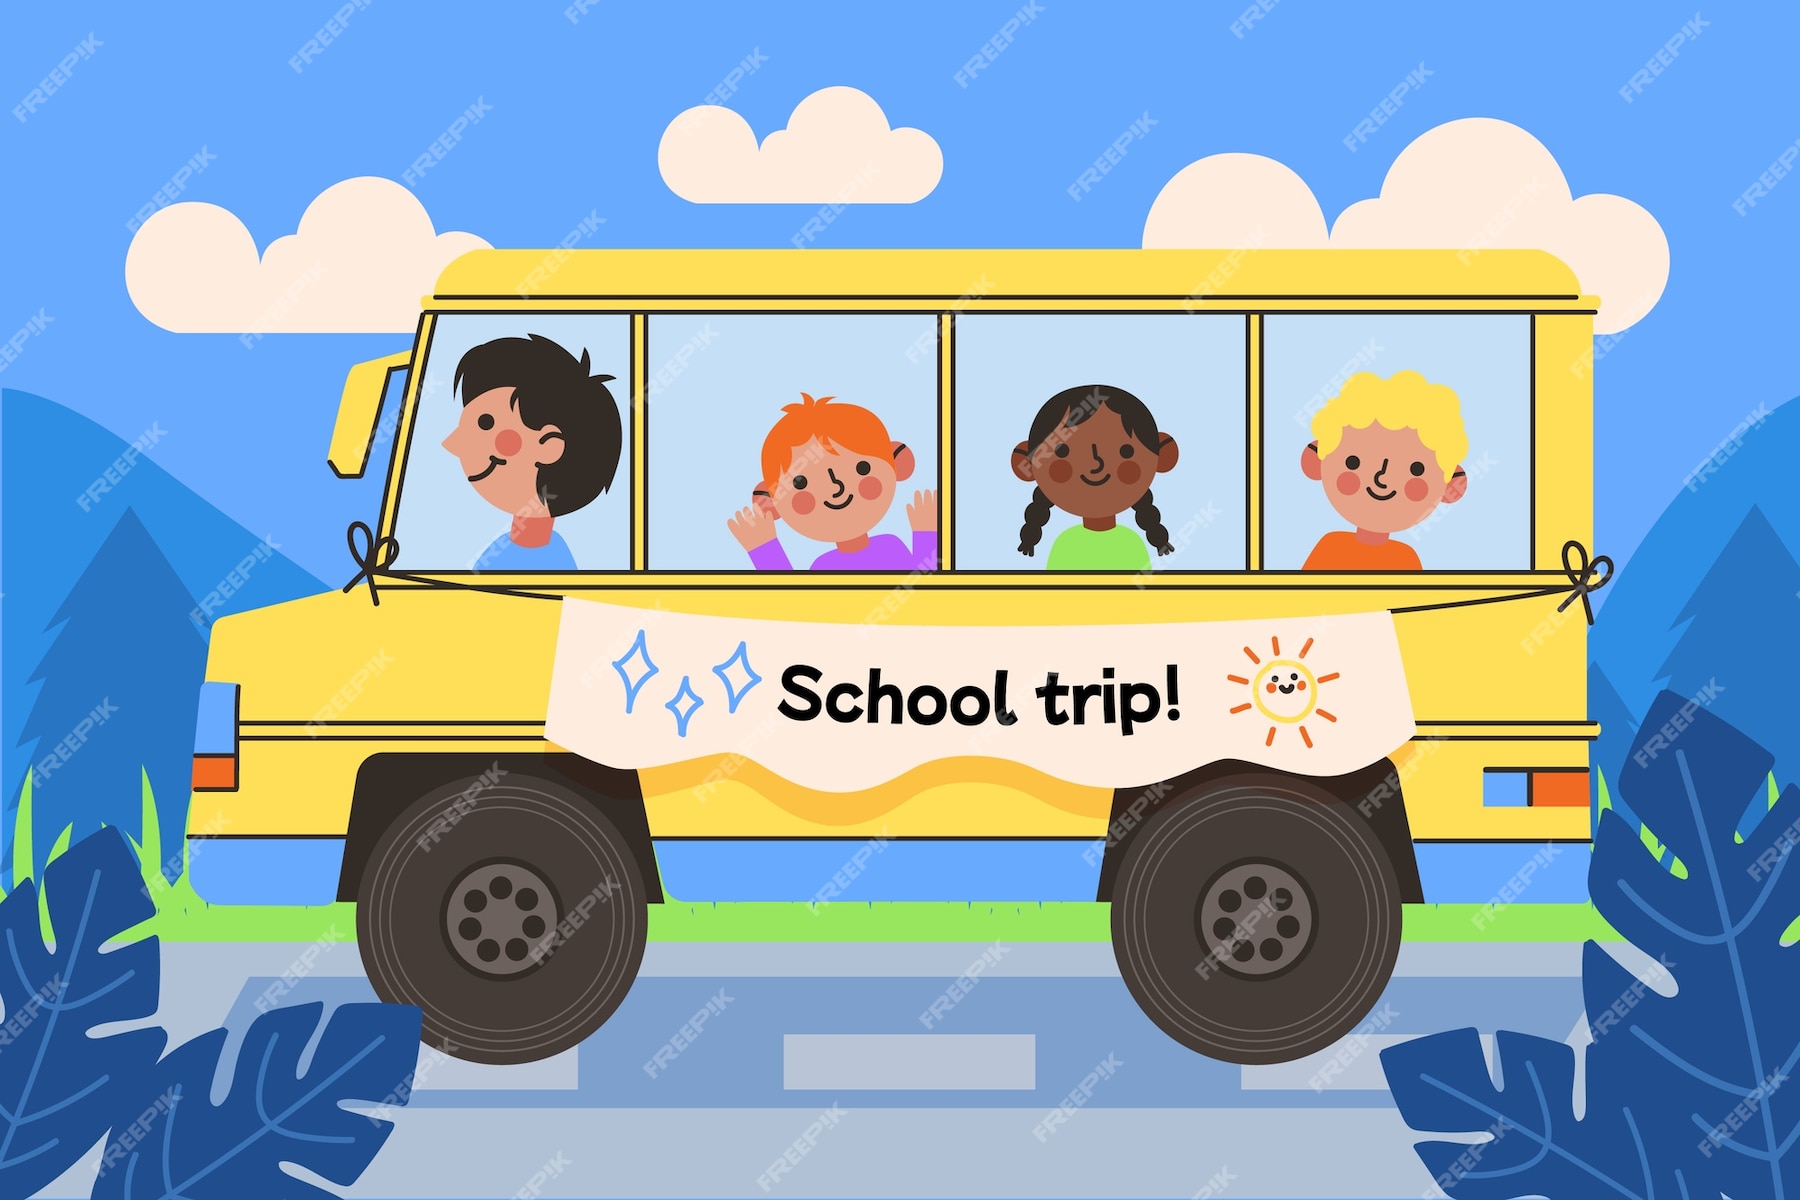 enjoy your school trip